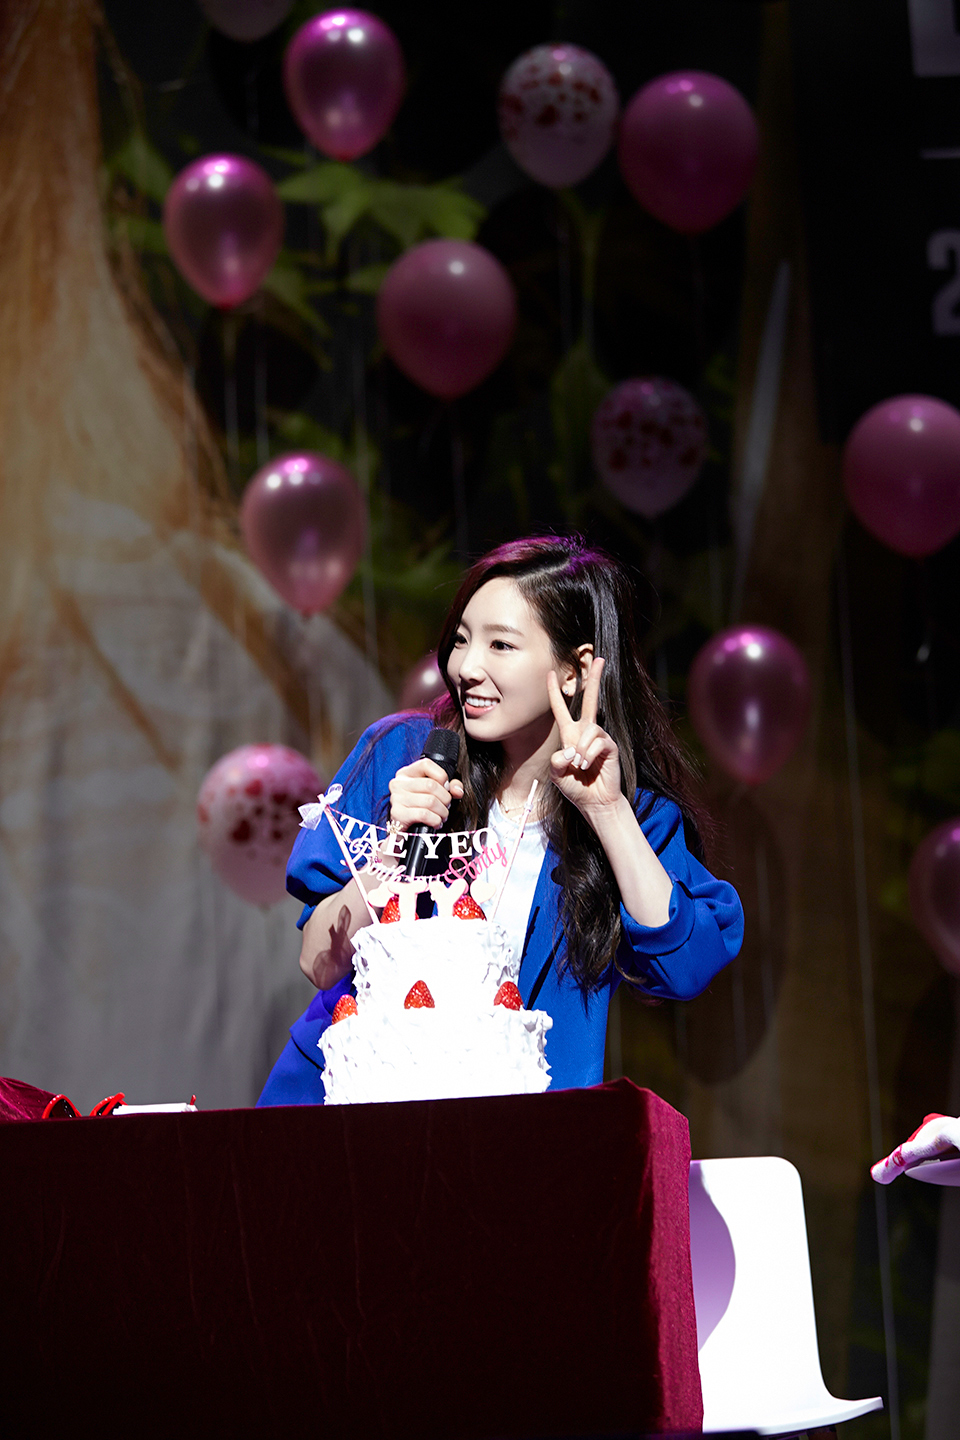 [PIC][08-03-2015]Hình ảnh mới nhất từ "Taeyeon 태연 Birthday Party" của TaeYeon vào tối nay X4LkryT9vJ